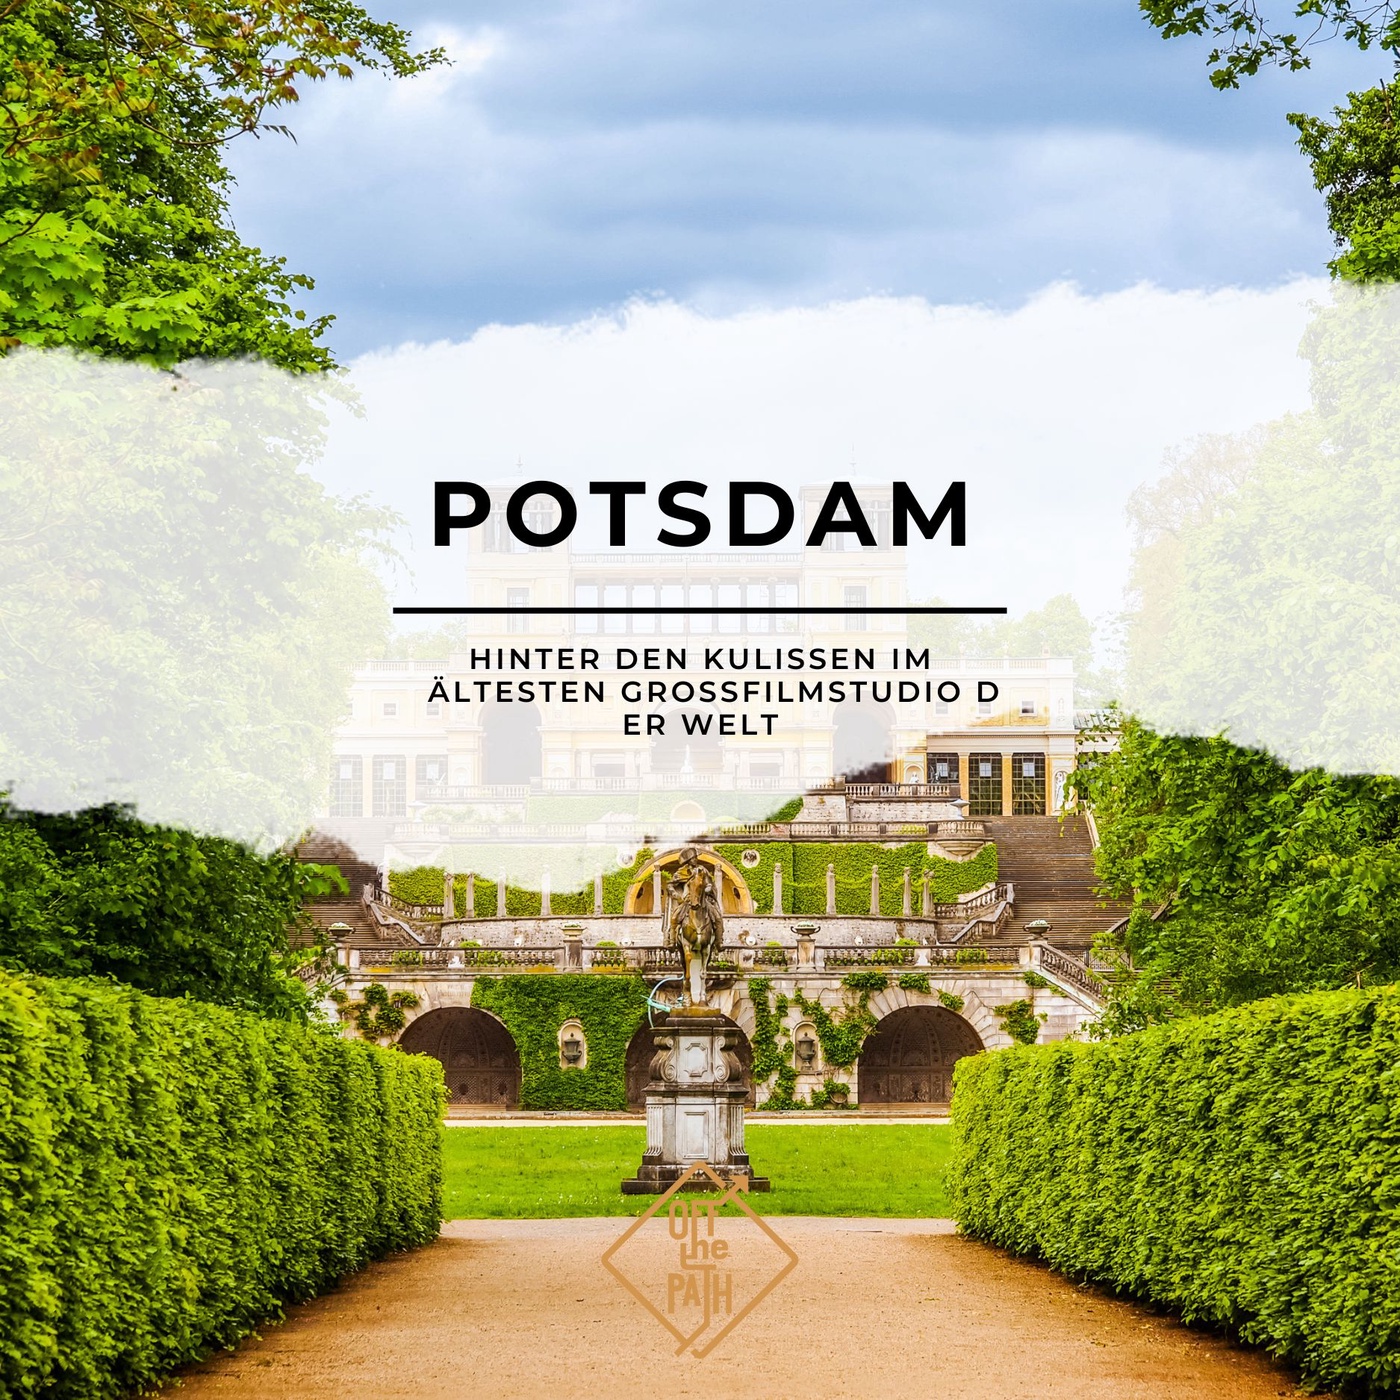 Potsdam: Hinter den Kulissen im ältesten Großfilmstudio der Welt